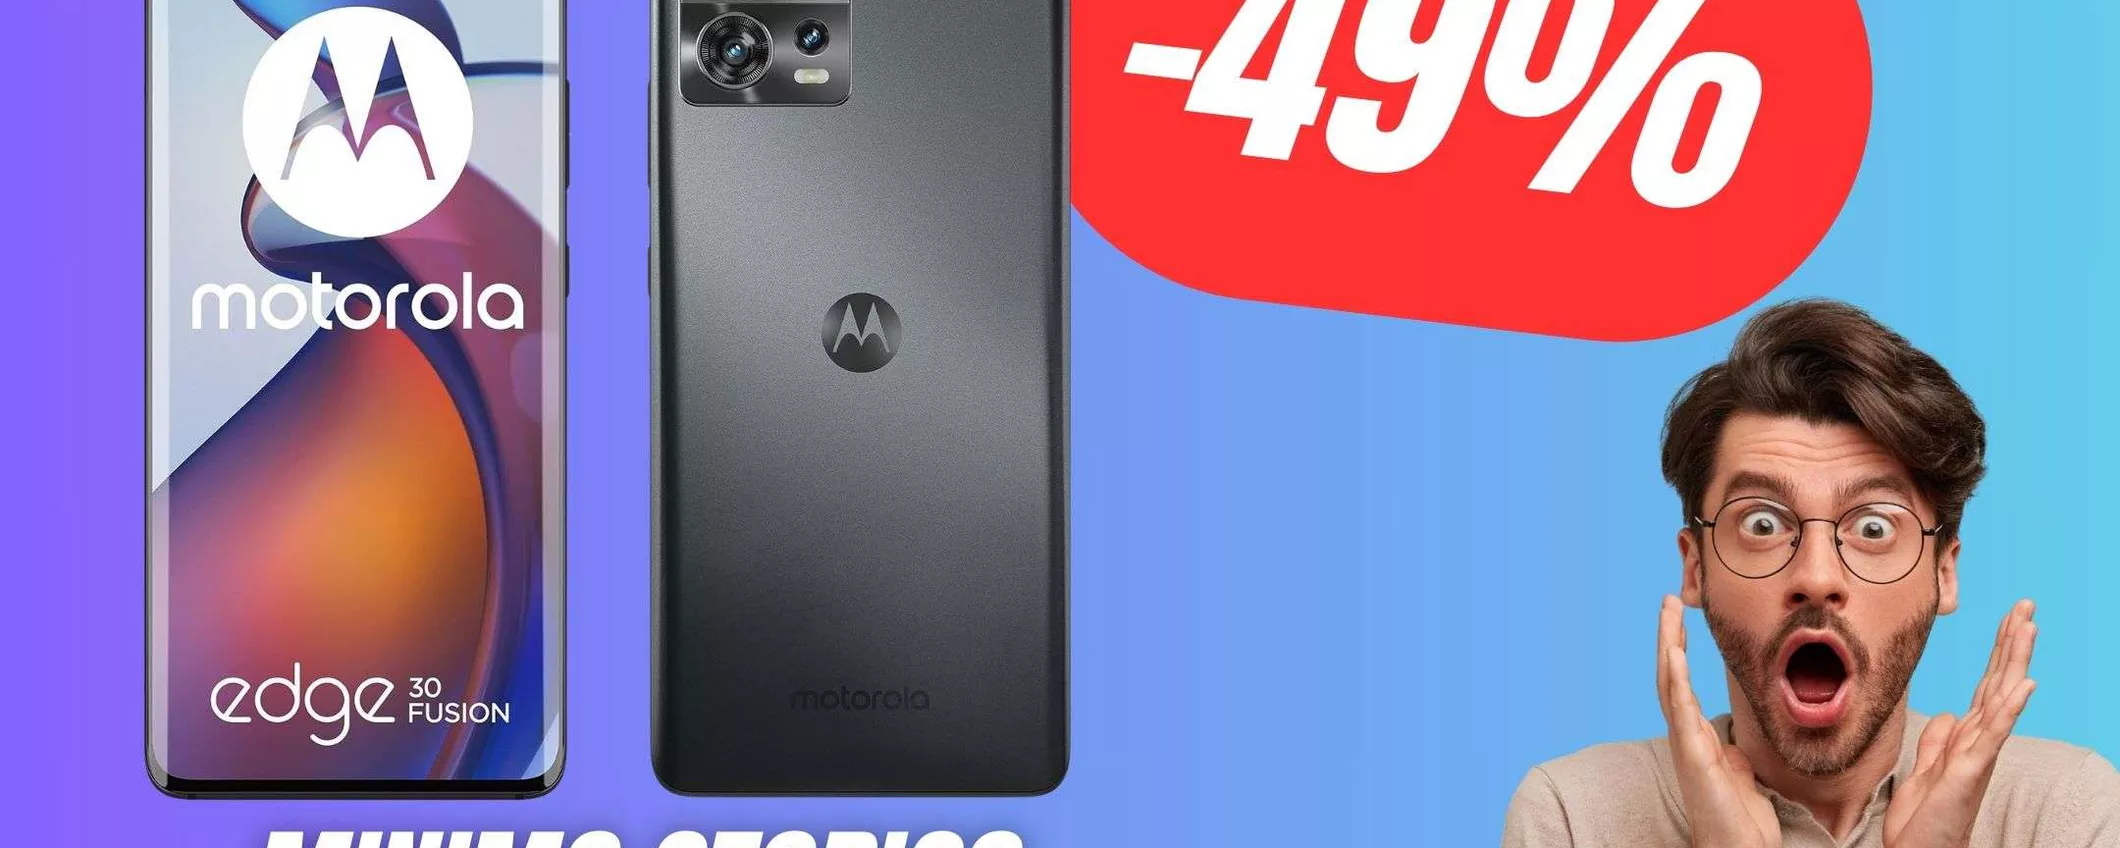 SUPER PREZZO per questo Smartphone Motorola al MINIMO STORICO! (-49%)